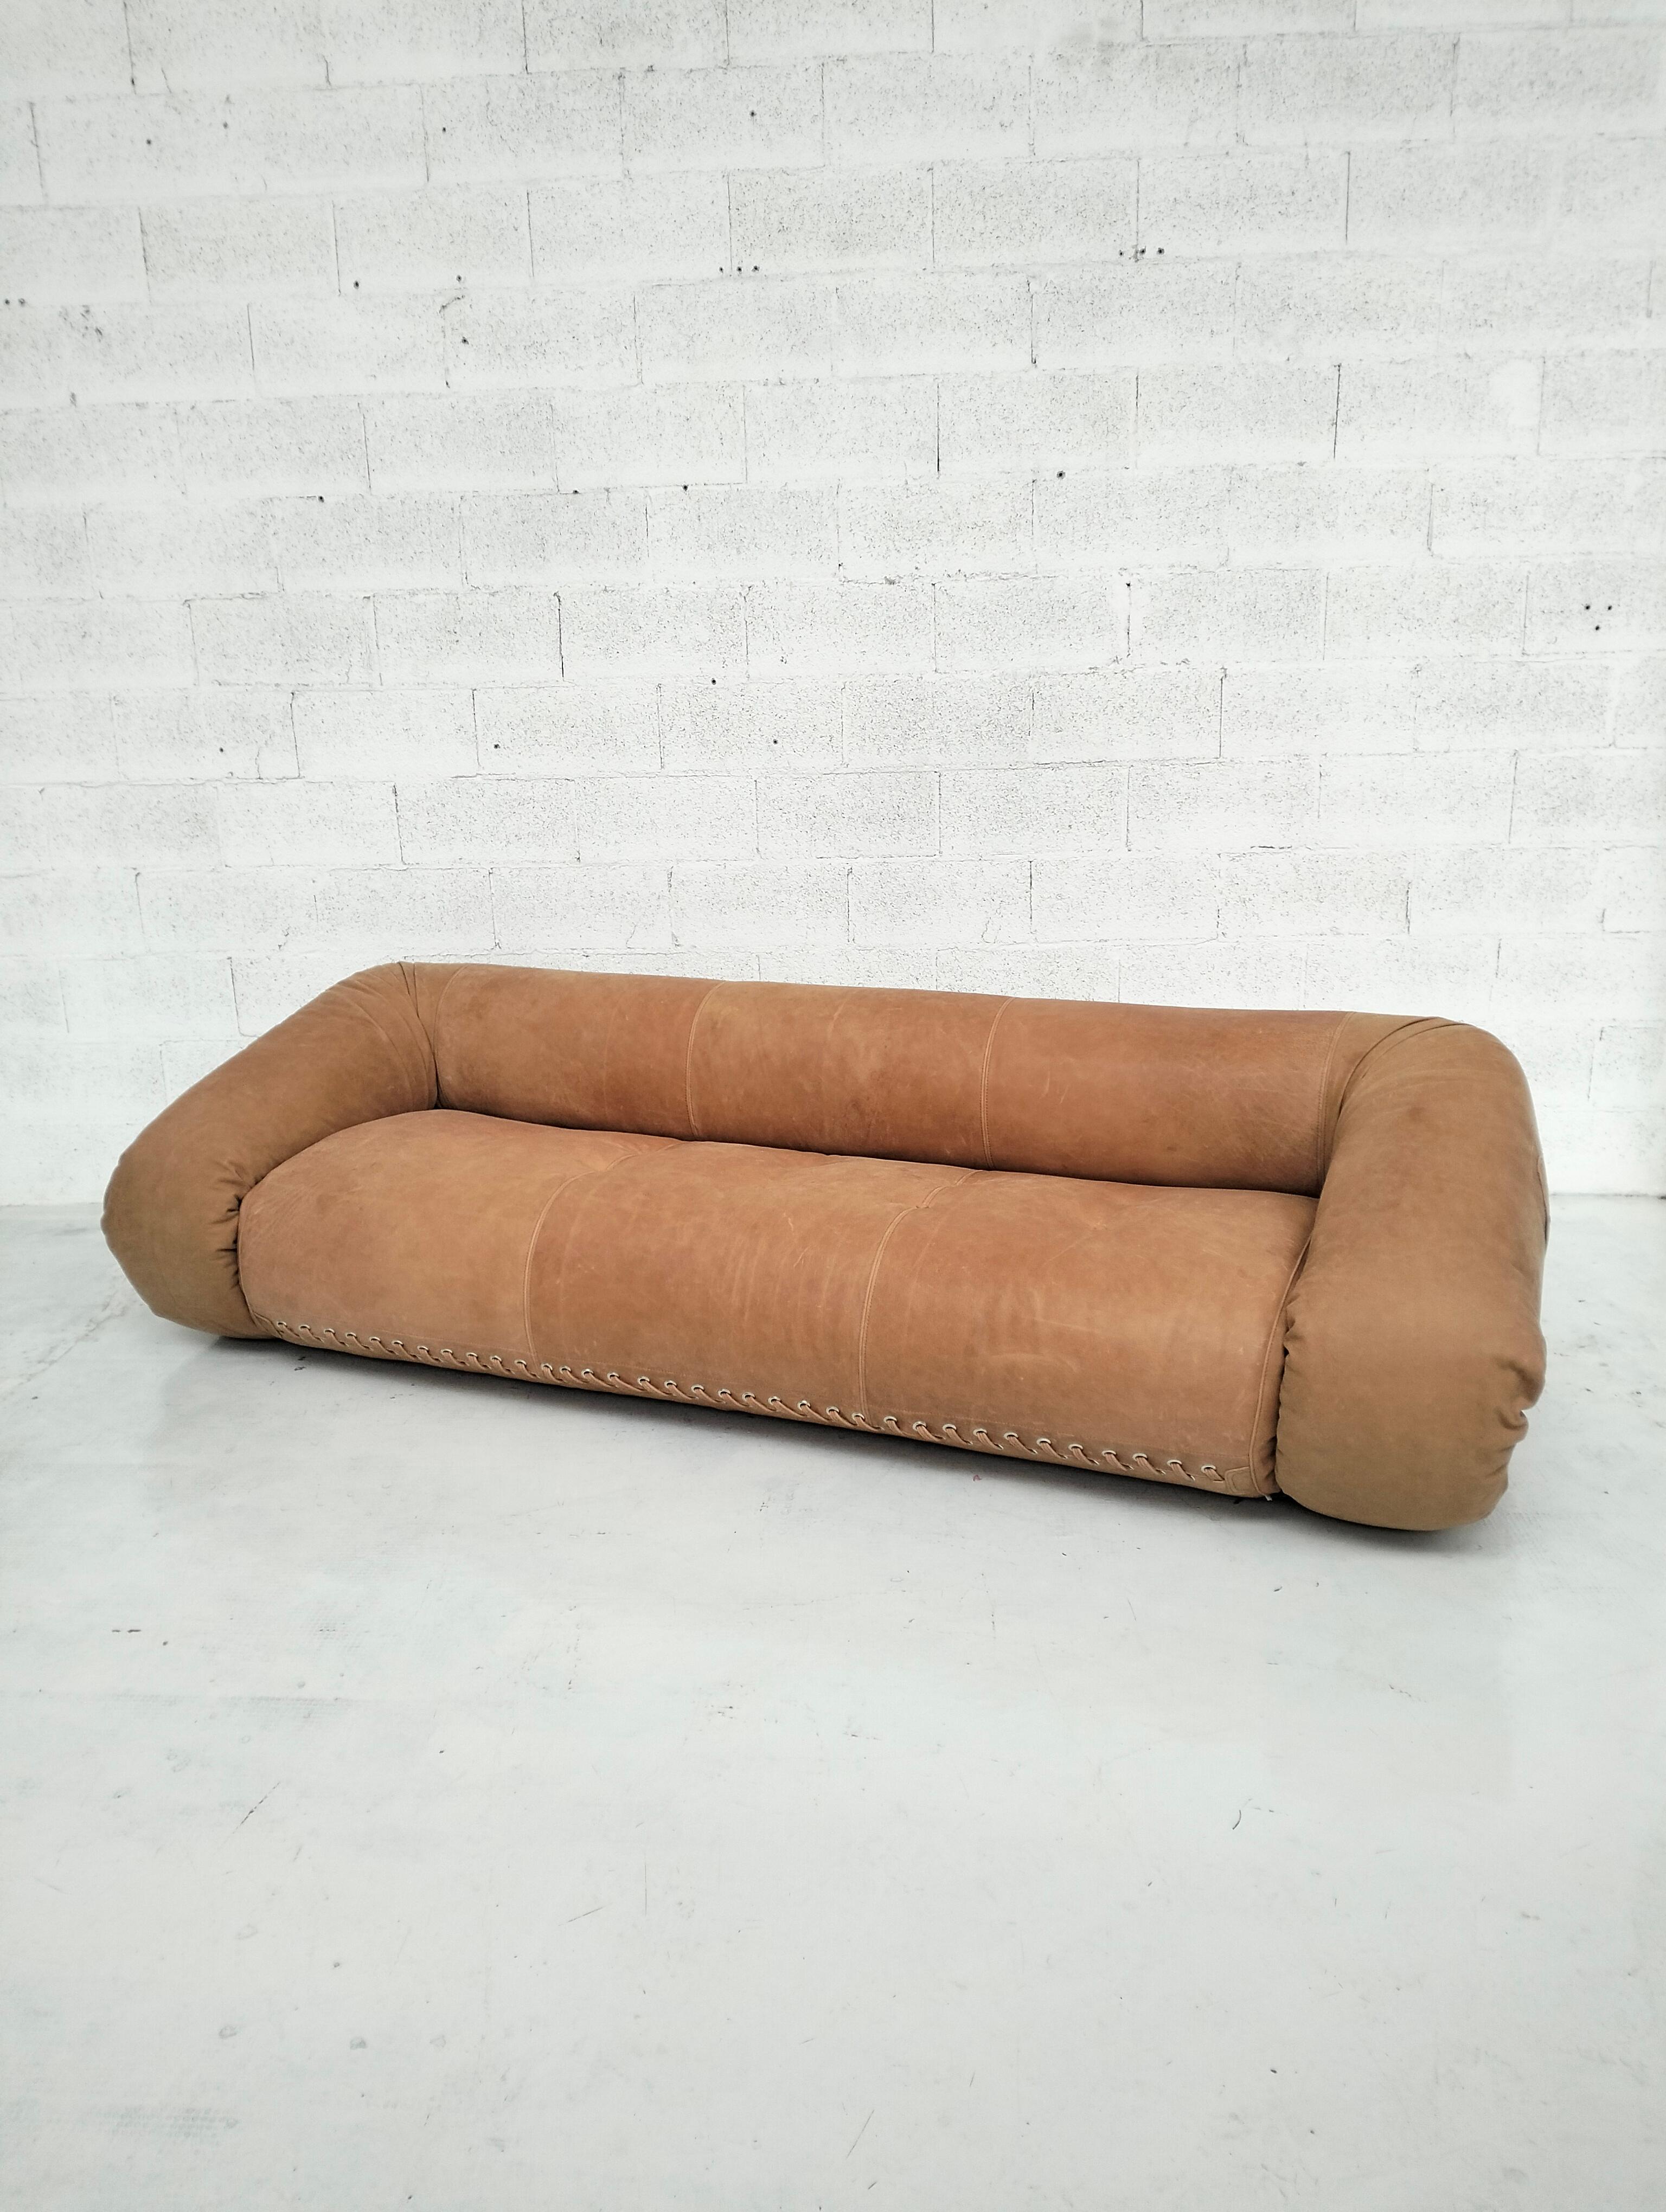 Canapé 3 places, lit de jour Alessandro conçu par Alessandro Becchi et produit par Giovannnetti dans les années 1970.
Conçu en 1970, le canapé-lit Anfibio a été décrit par les critiques du monde entier comme une 